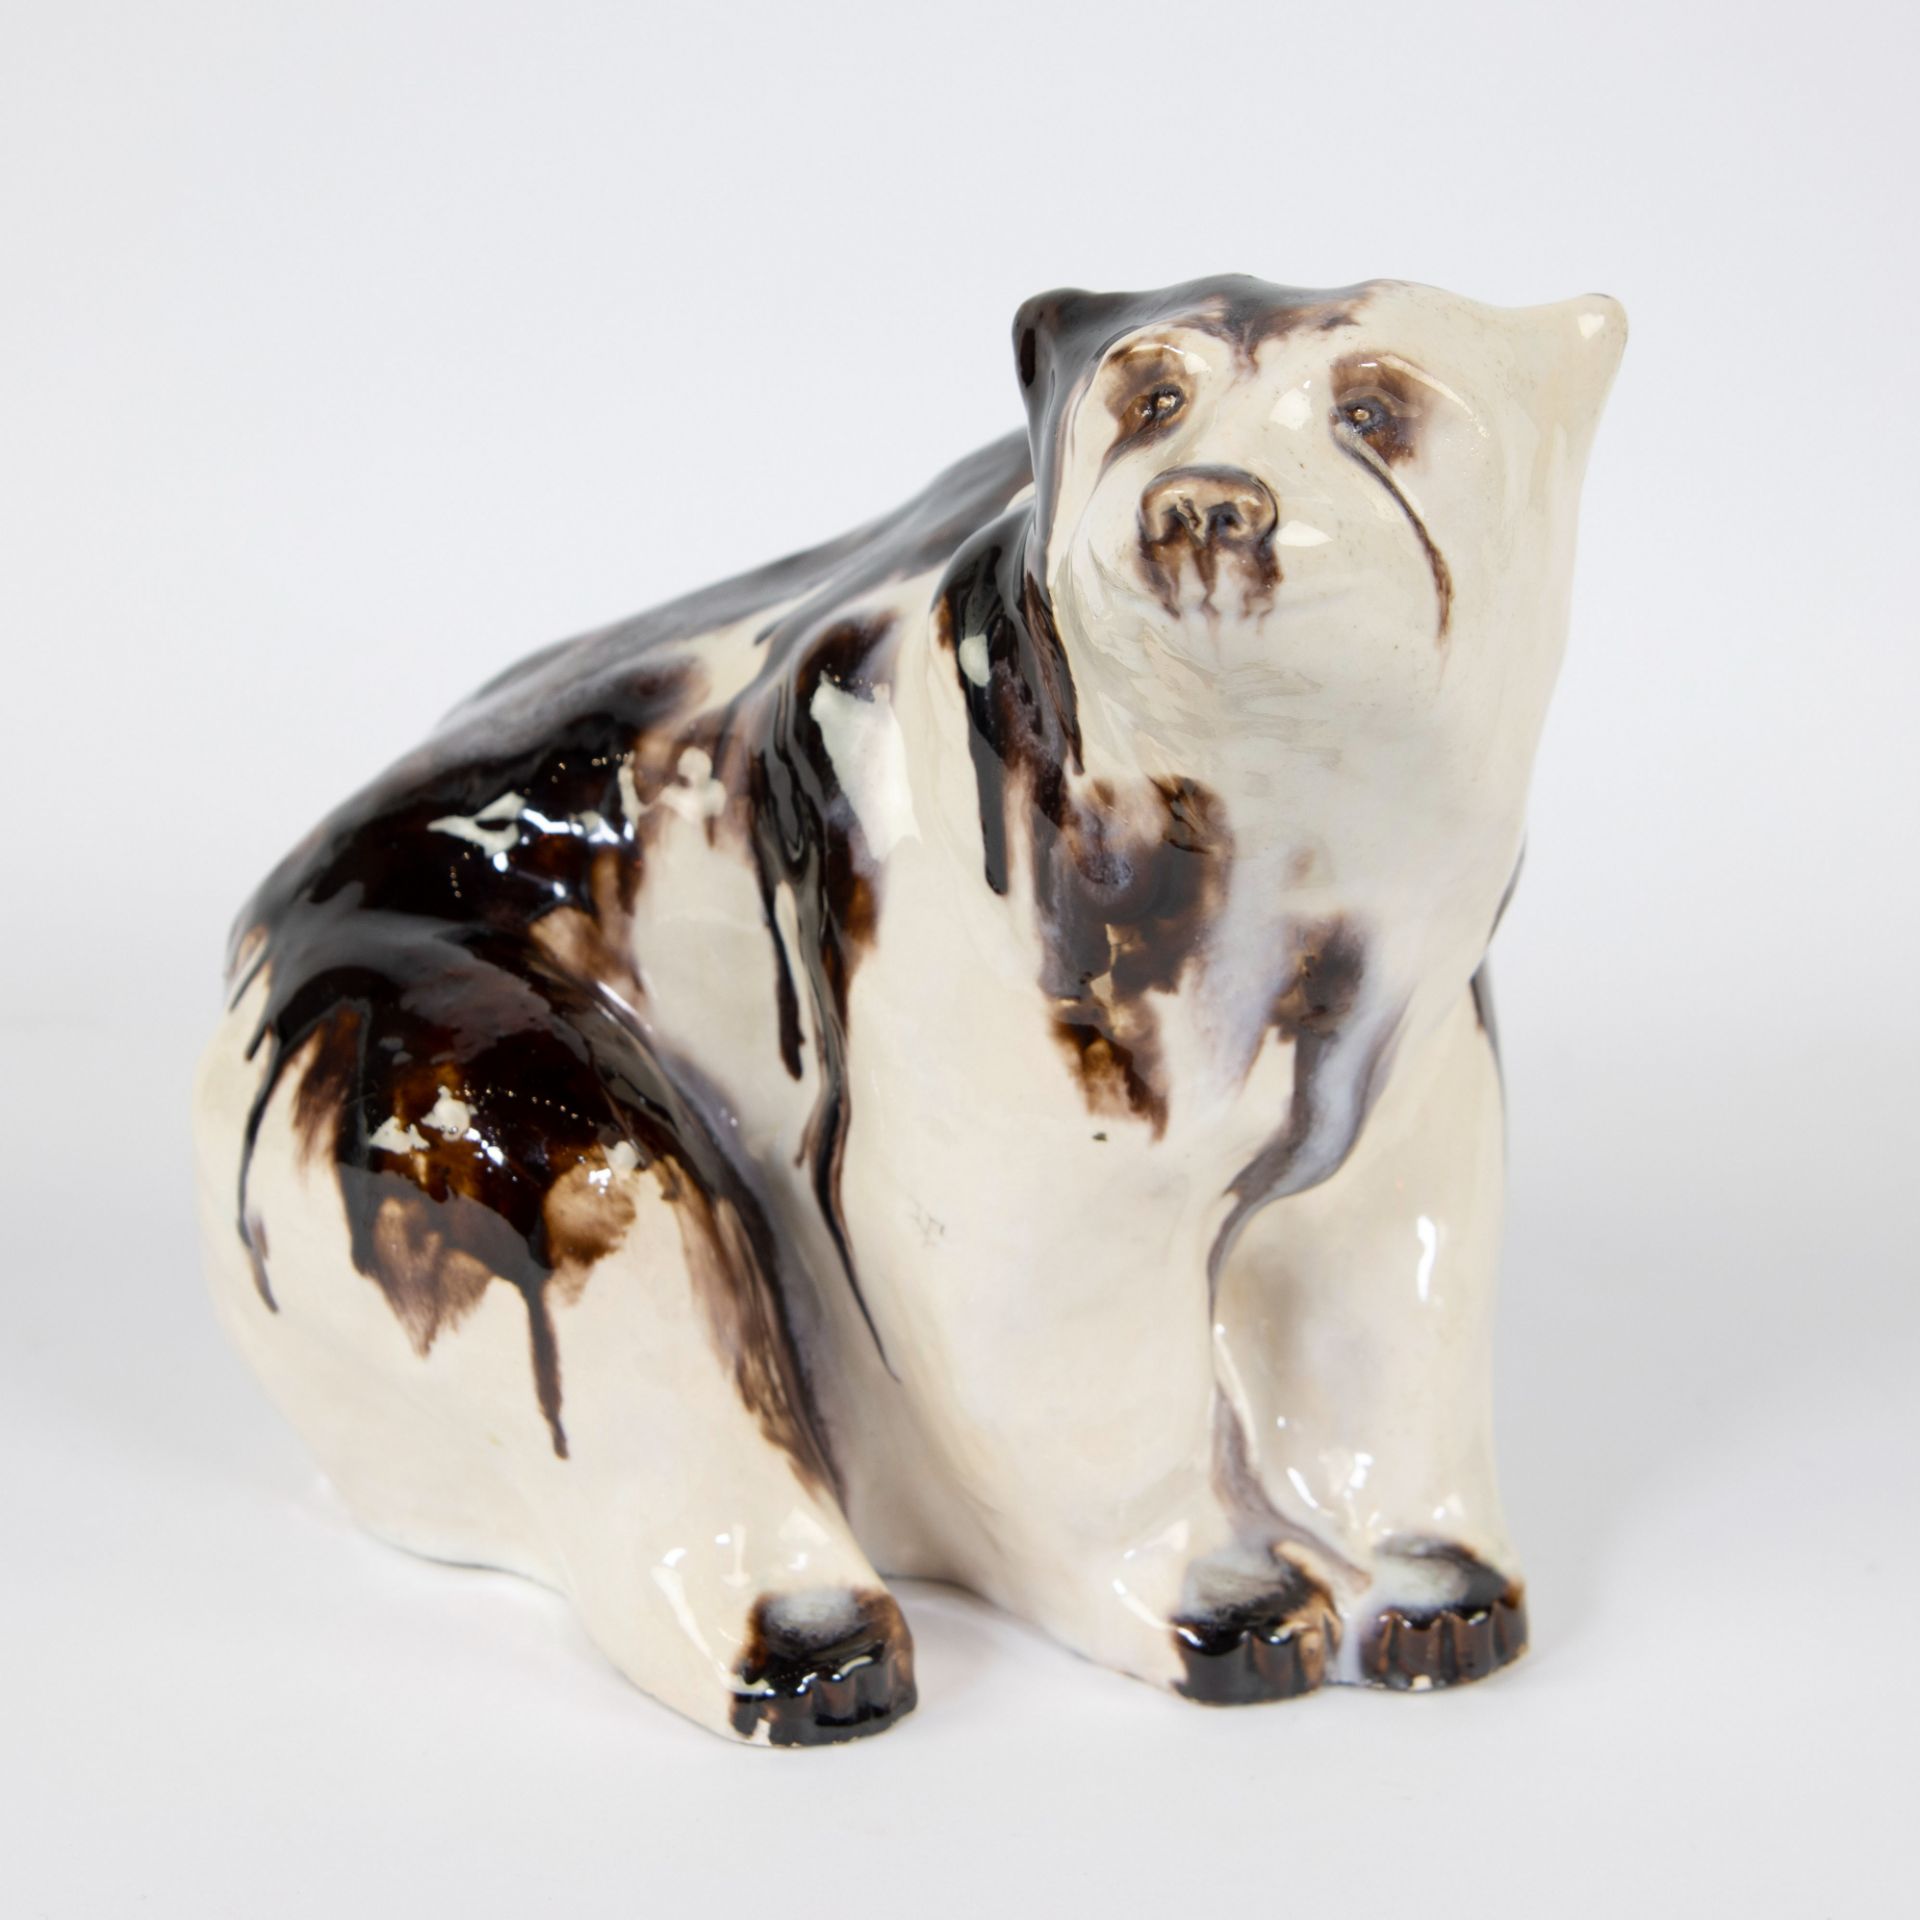 Bear in glazed earthenware signed Goffard